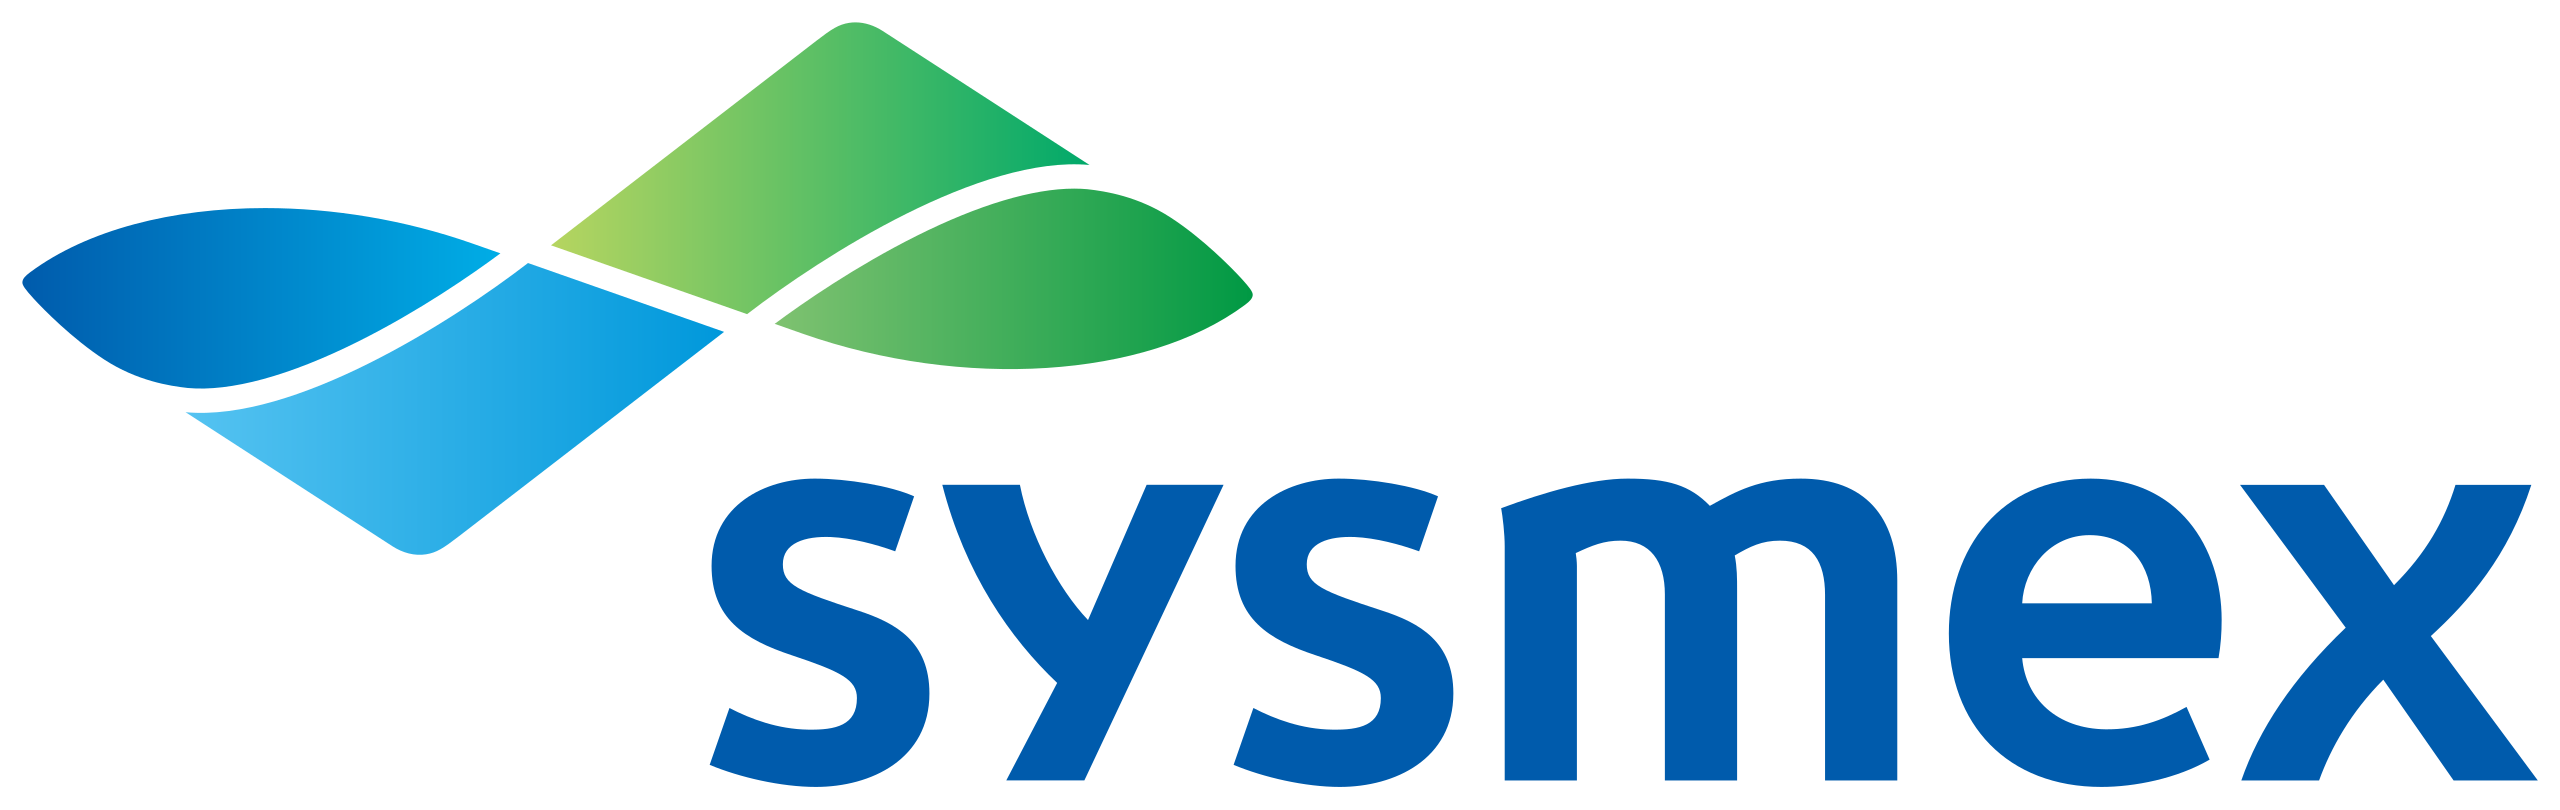 Sysmex_company_logo